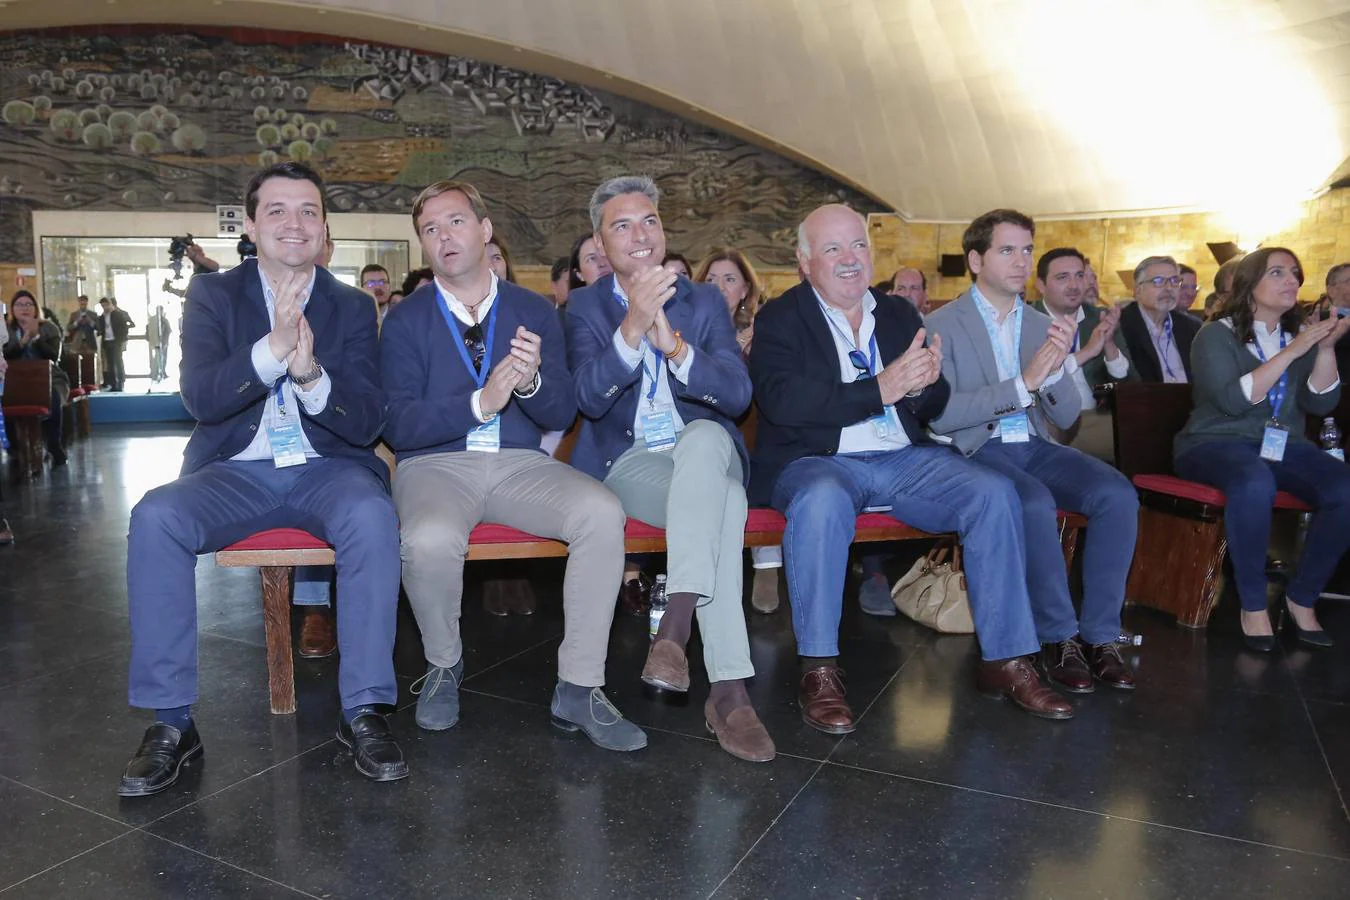 La Convención Provincial del PP de Córdoba, en imágenes